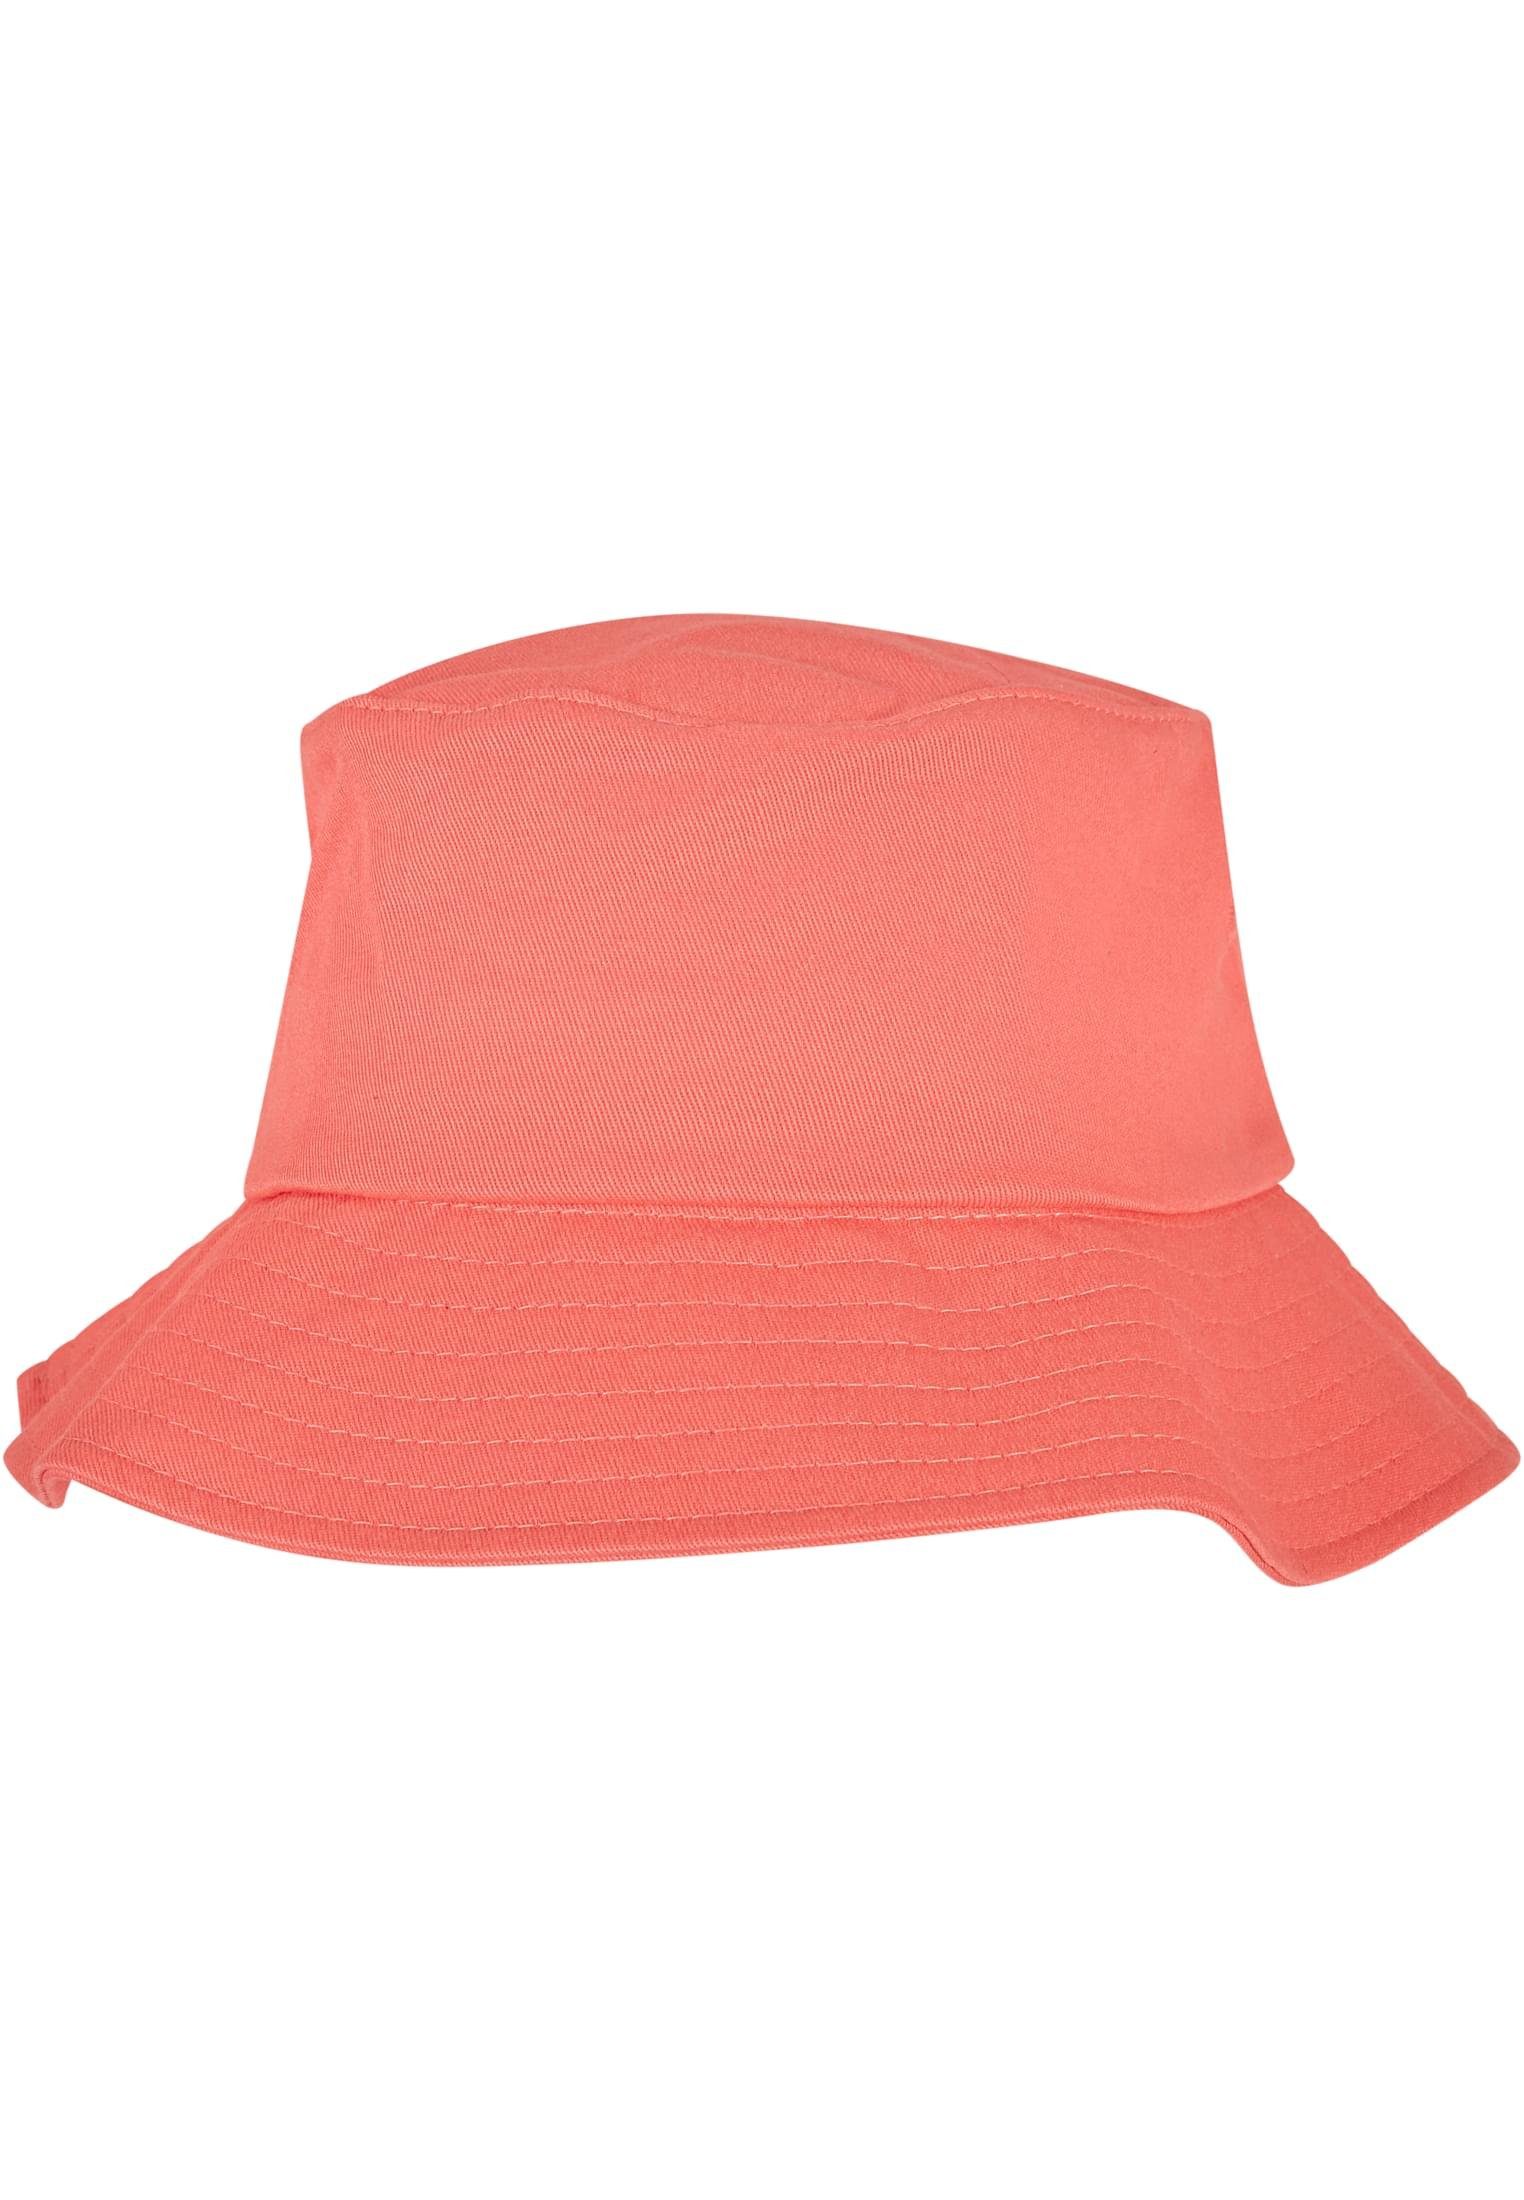 Flexfit Flex Cap Accessoires Twill spicedcoral Hat Cotton Flexfit Bucket